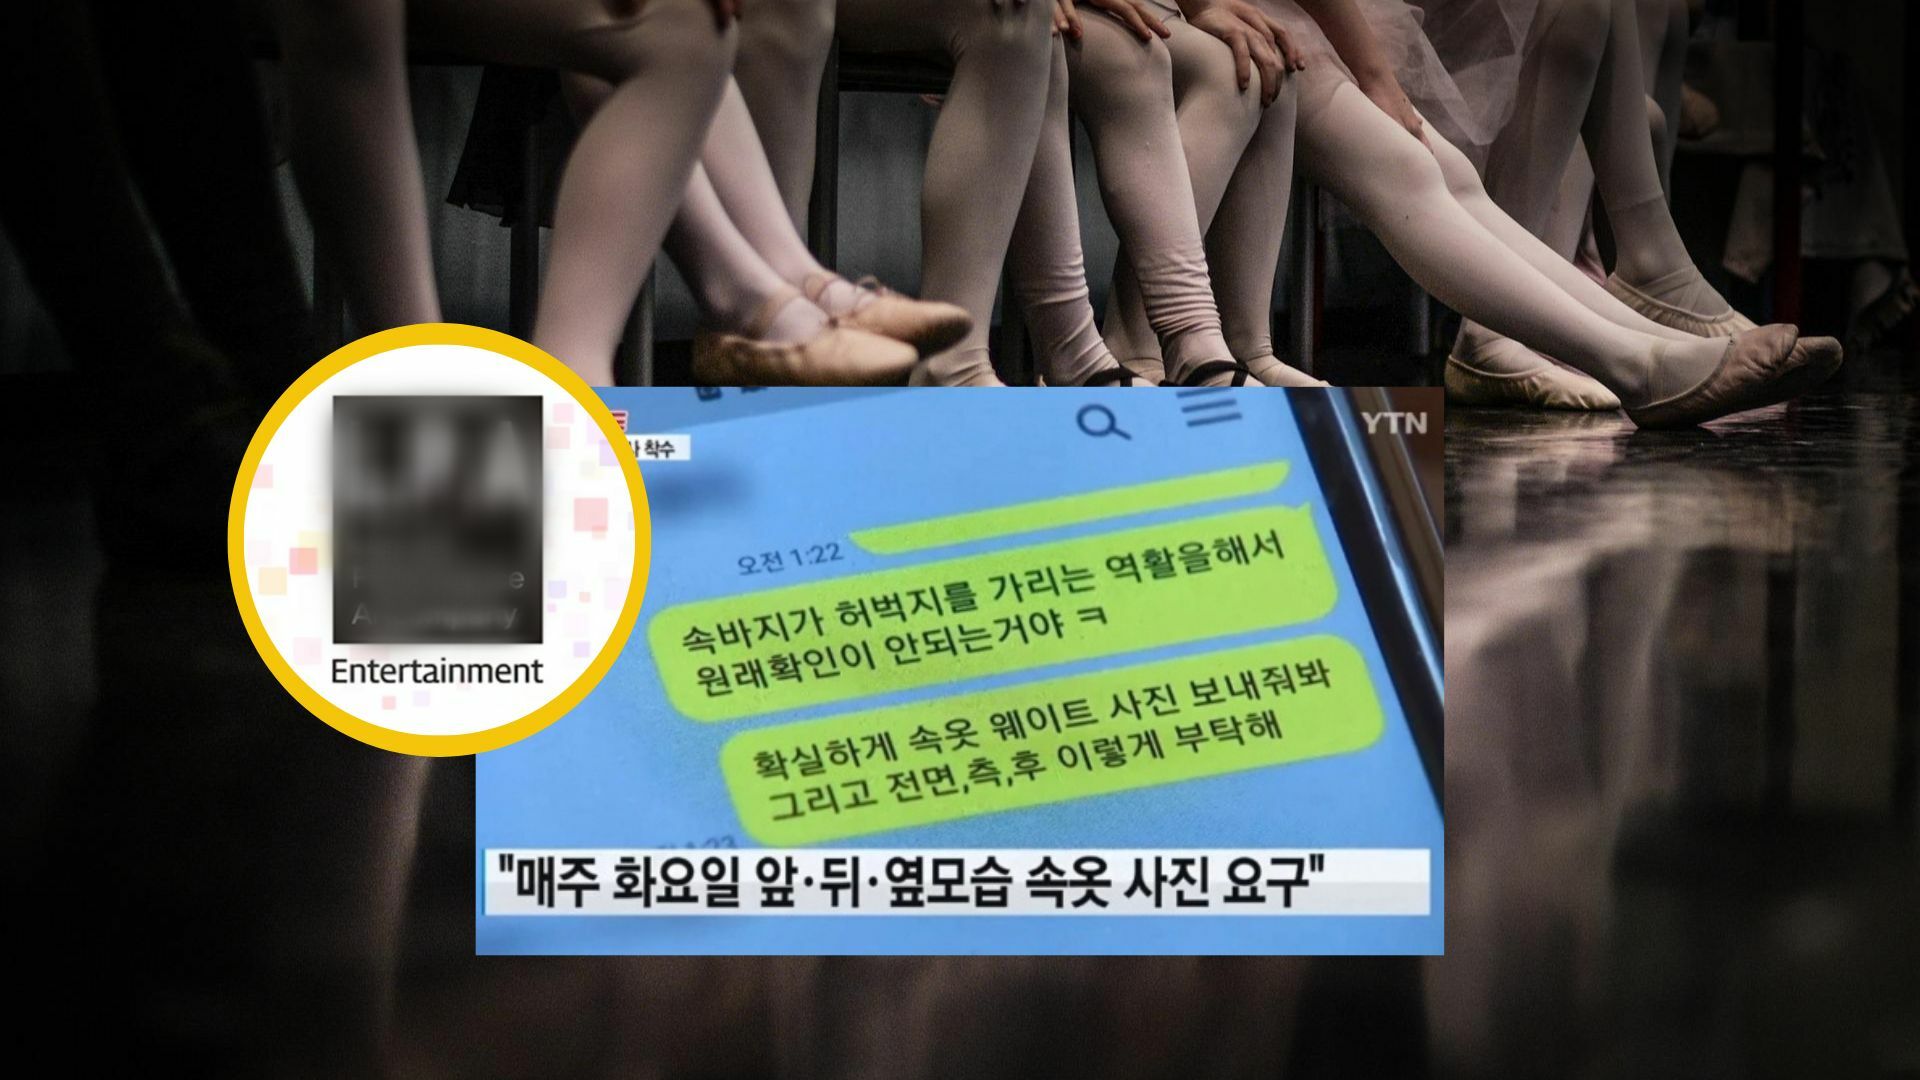 เด็กฝึกเกาหลีแจ้งความ CEO ค่ายเพลงขอดูรูปโป๊